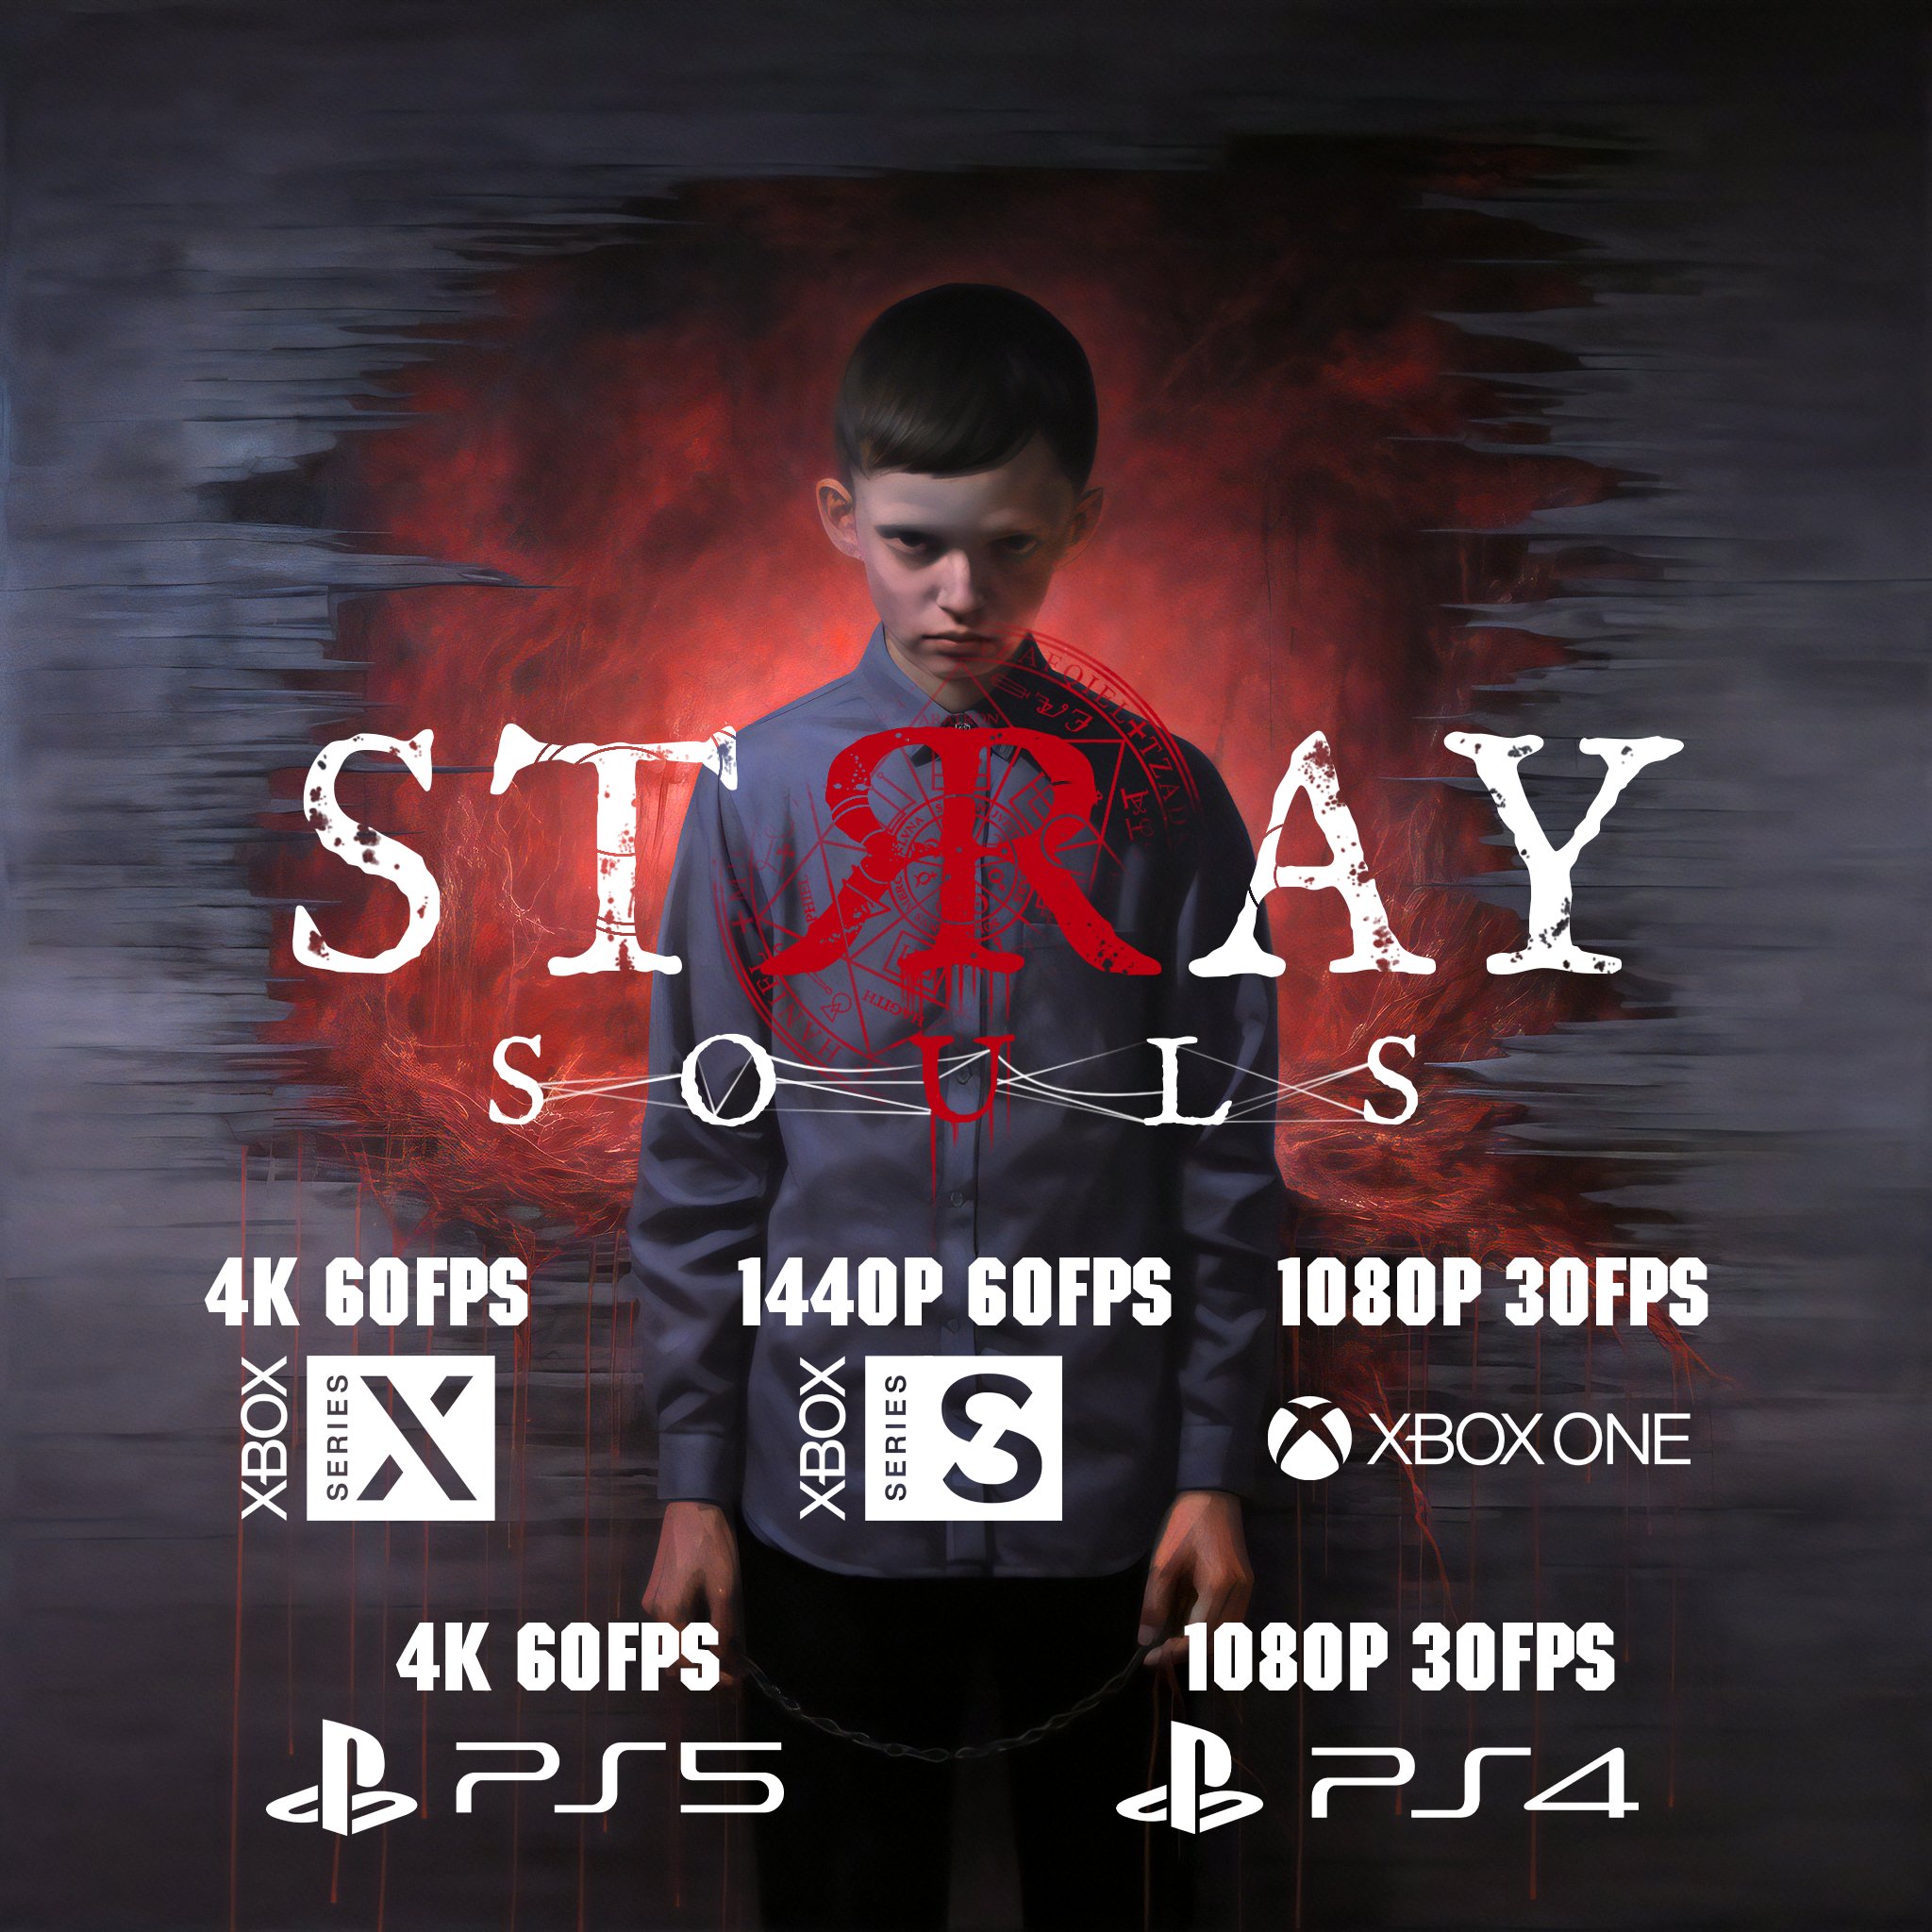 "Хоррор нового поколения" Stray Souls будет работать в 60 FPS, как на Xbox Series X, так и на Xbox Series S: с сайта NEWXBOXONE.RU